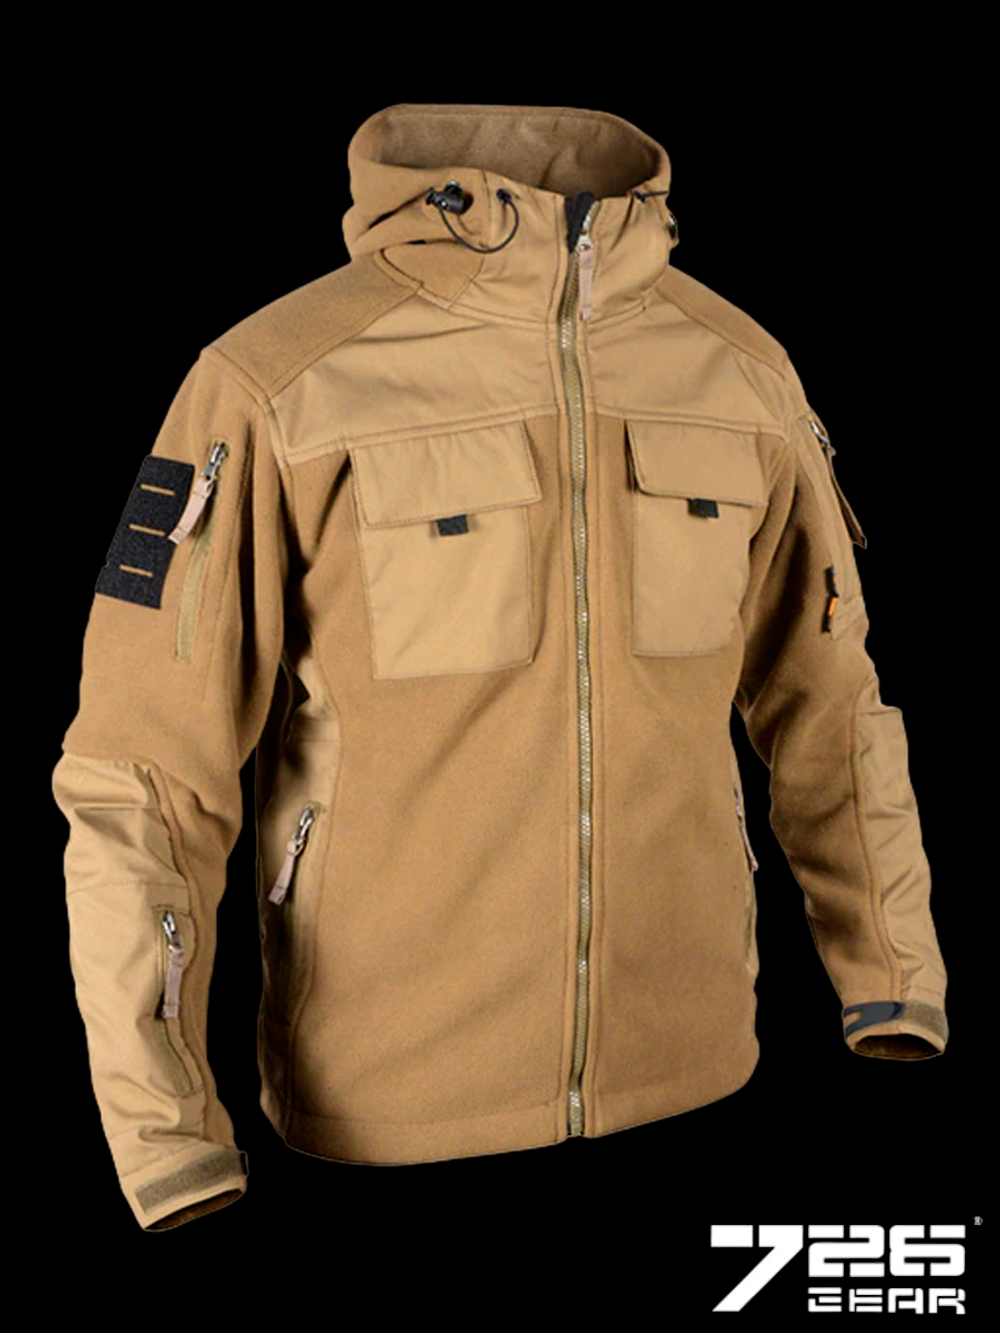 Тактическая флисовая куртка с капюшоном 726 GEAR ARMYFANS. Койот